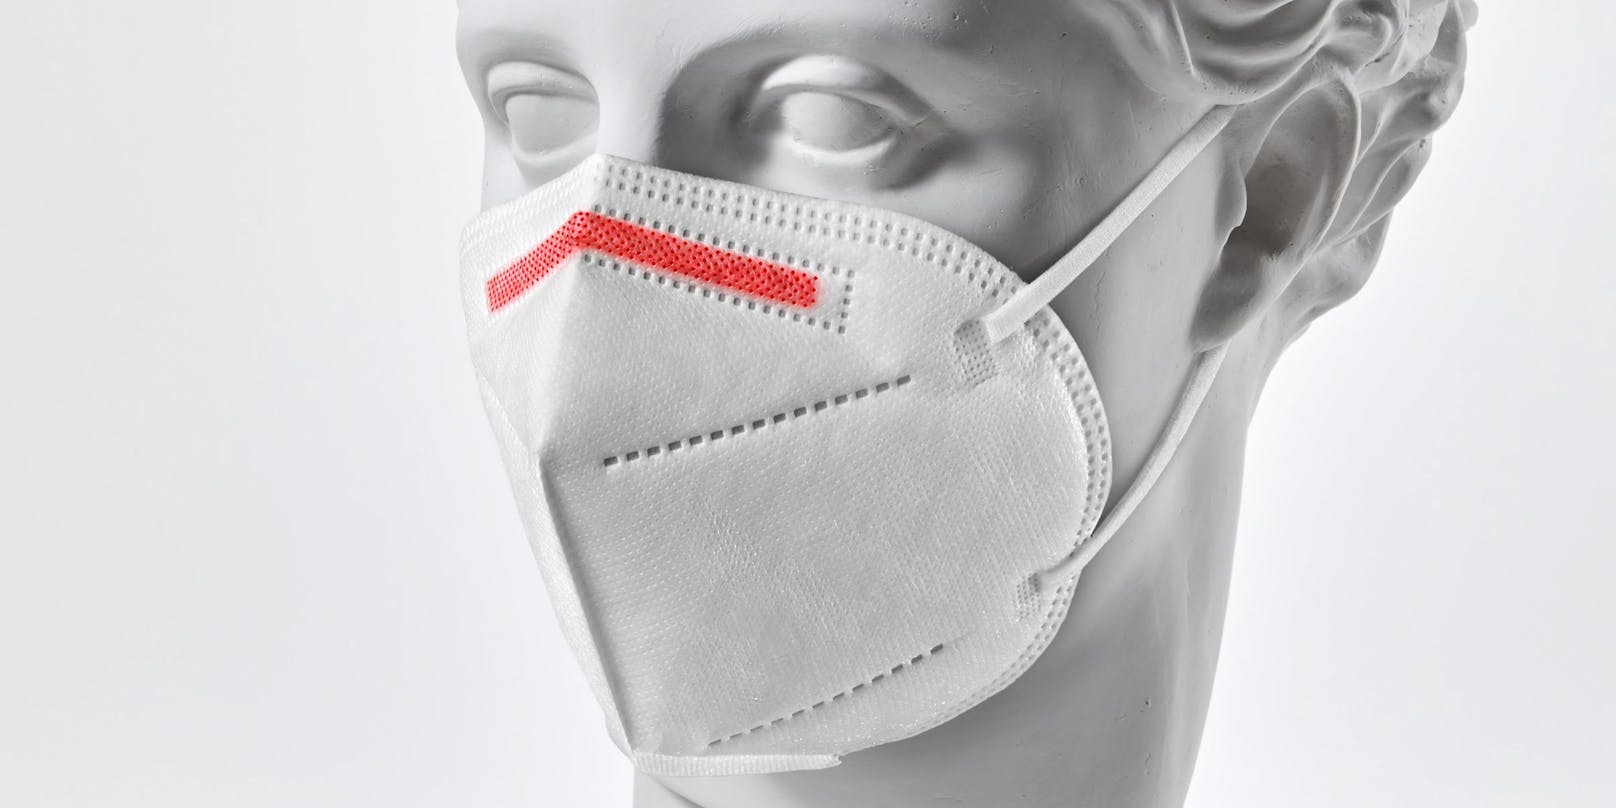 Stammt diese FFP2-Maske "made in Austria" in Wahrheit aus China?